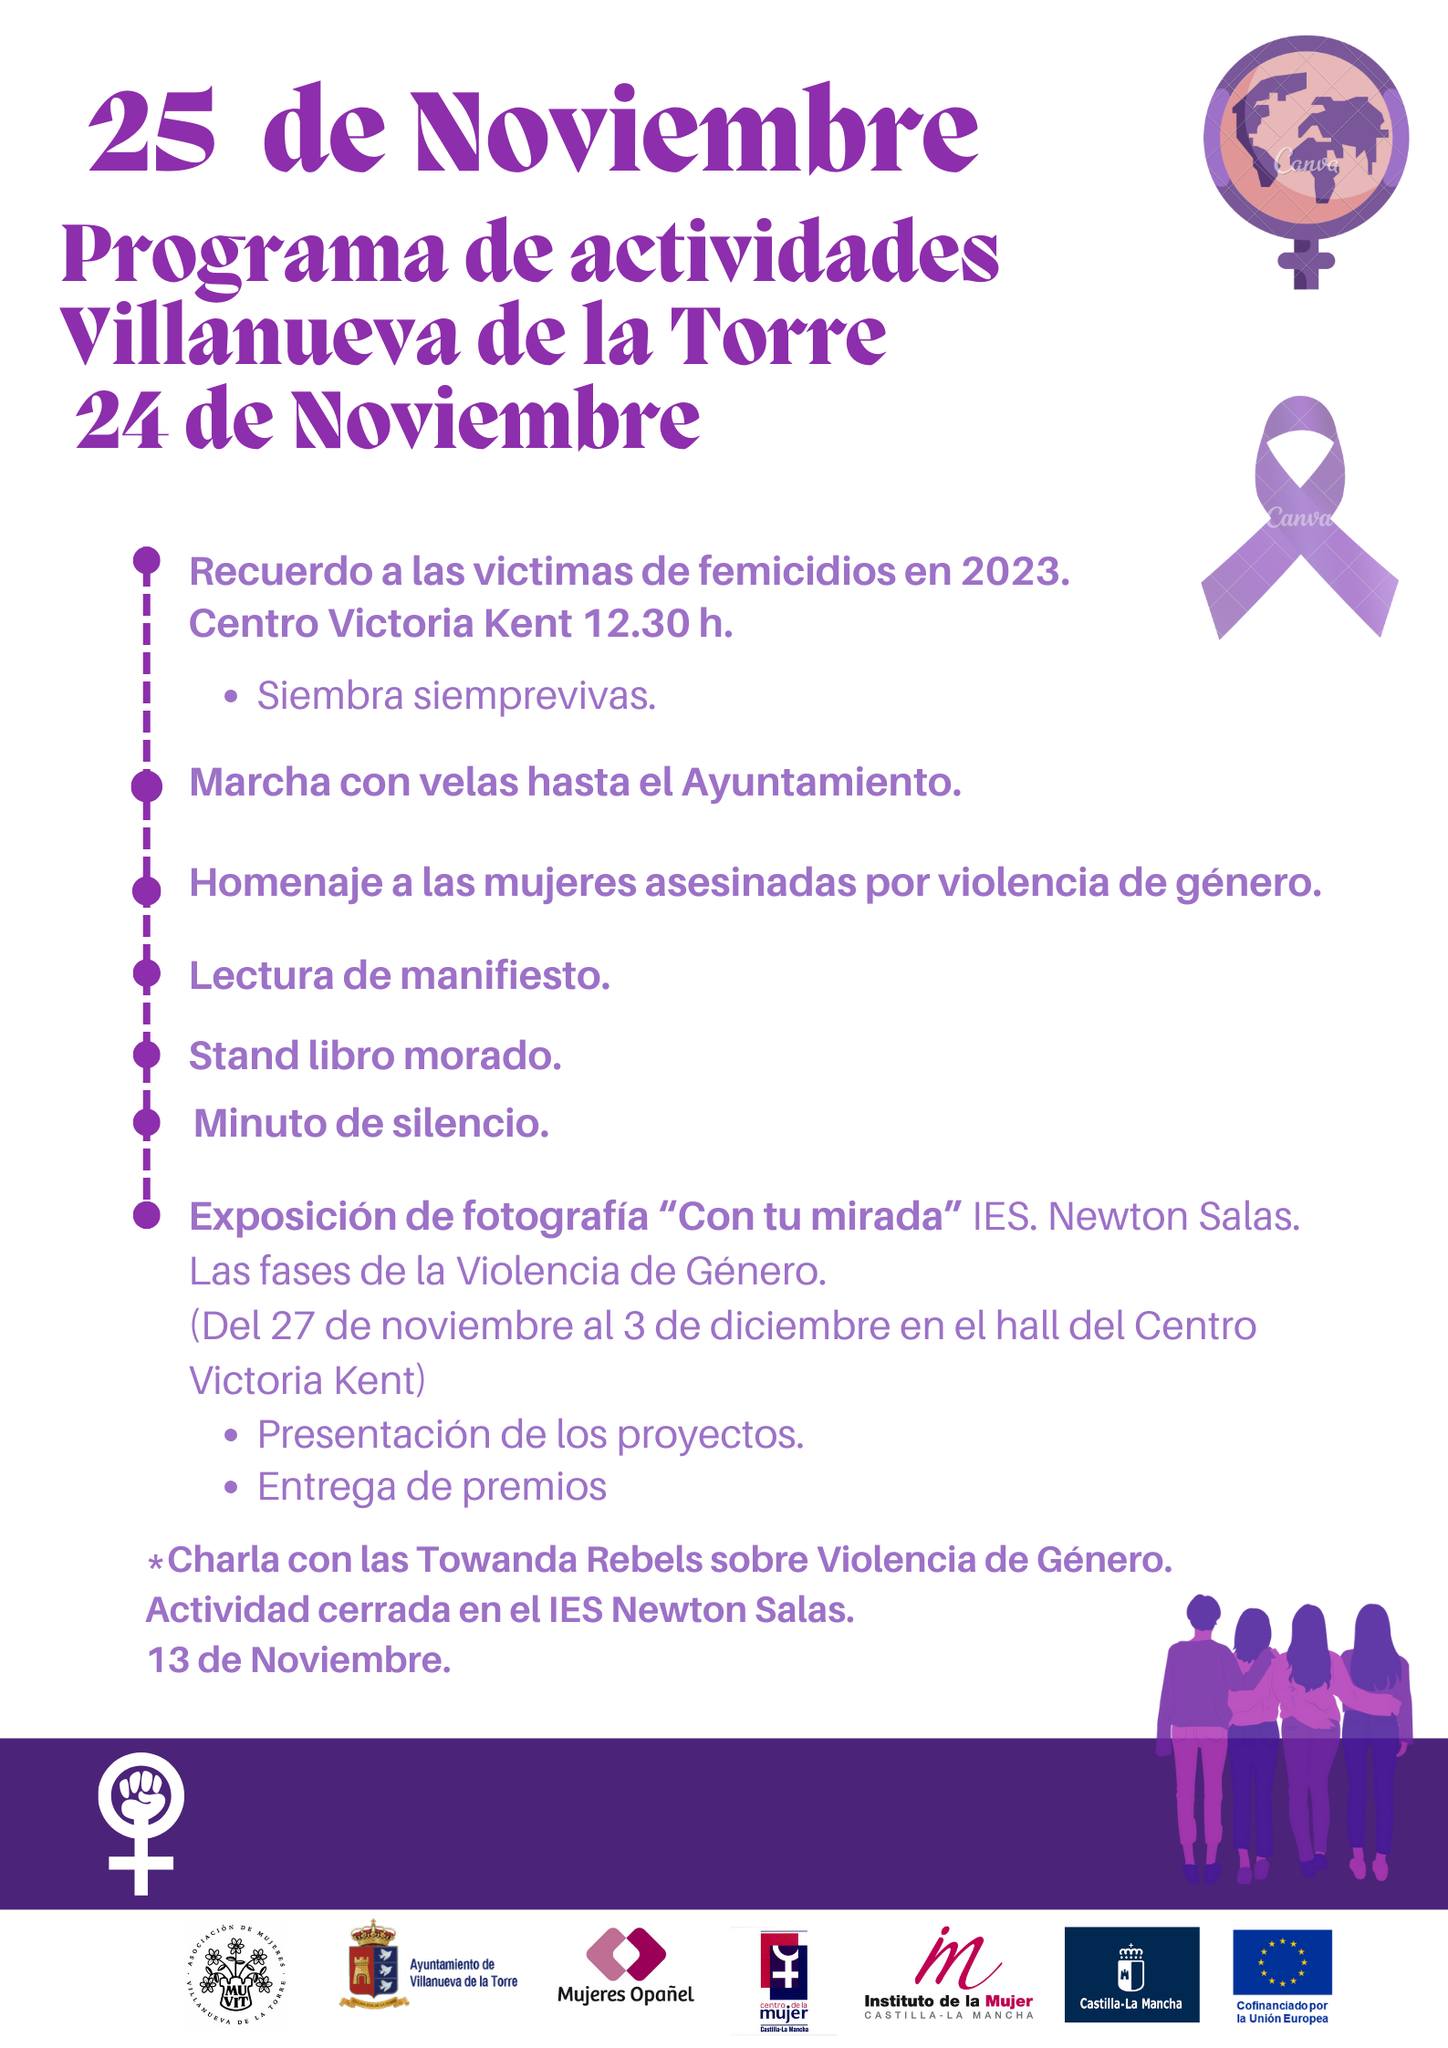 Villanueva de la Torre Conmemora el 25N con Emotivas Actividades en Contra de la Violencia de Género